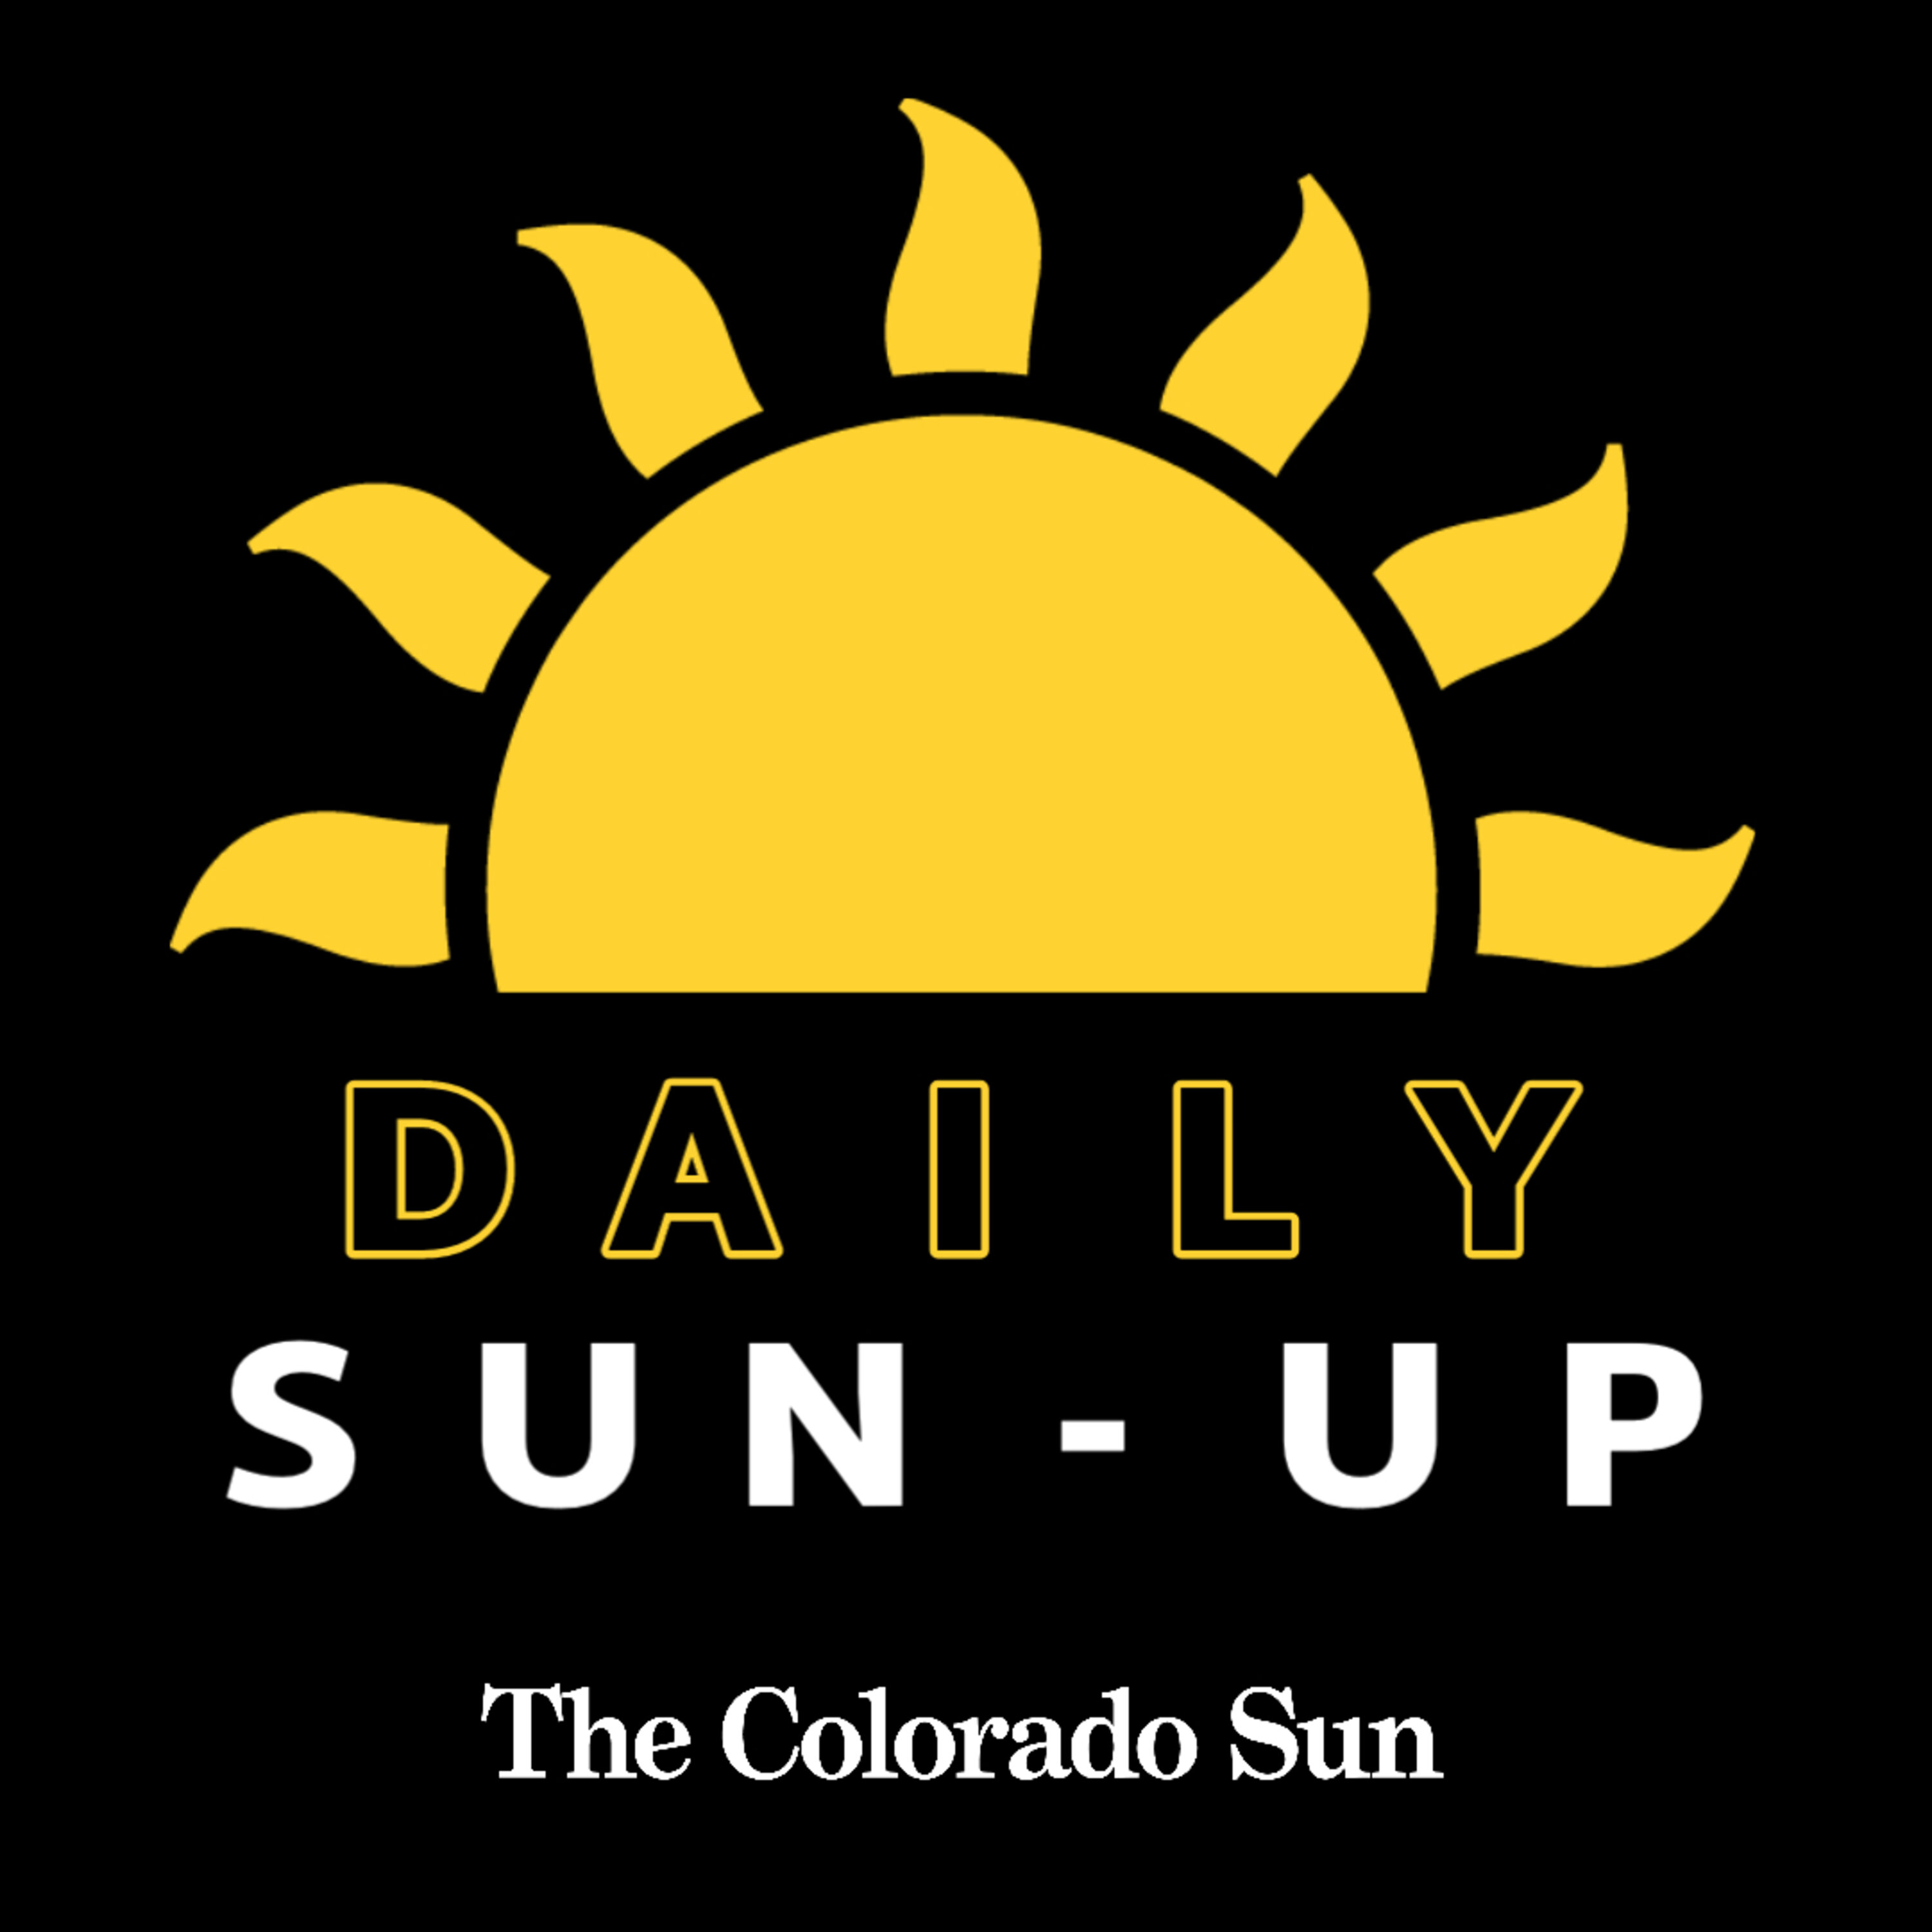 Colorado Sun Daily Sun-Up: Colorado's Role in The OSIRIS-REx Mission, San Carlos de los Jupes